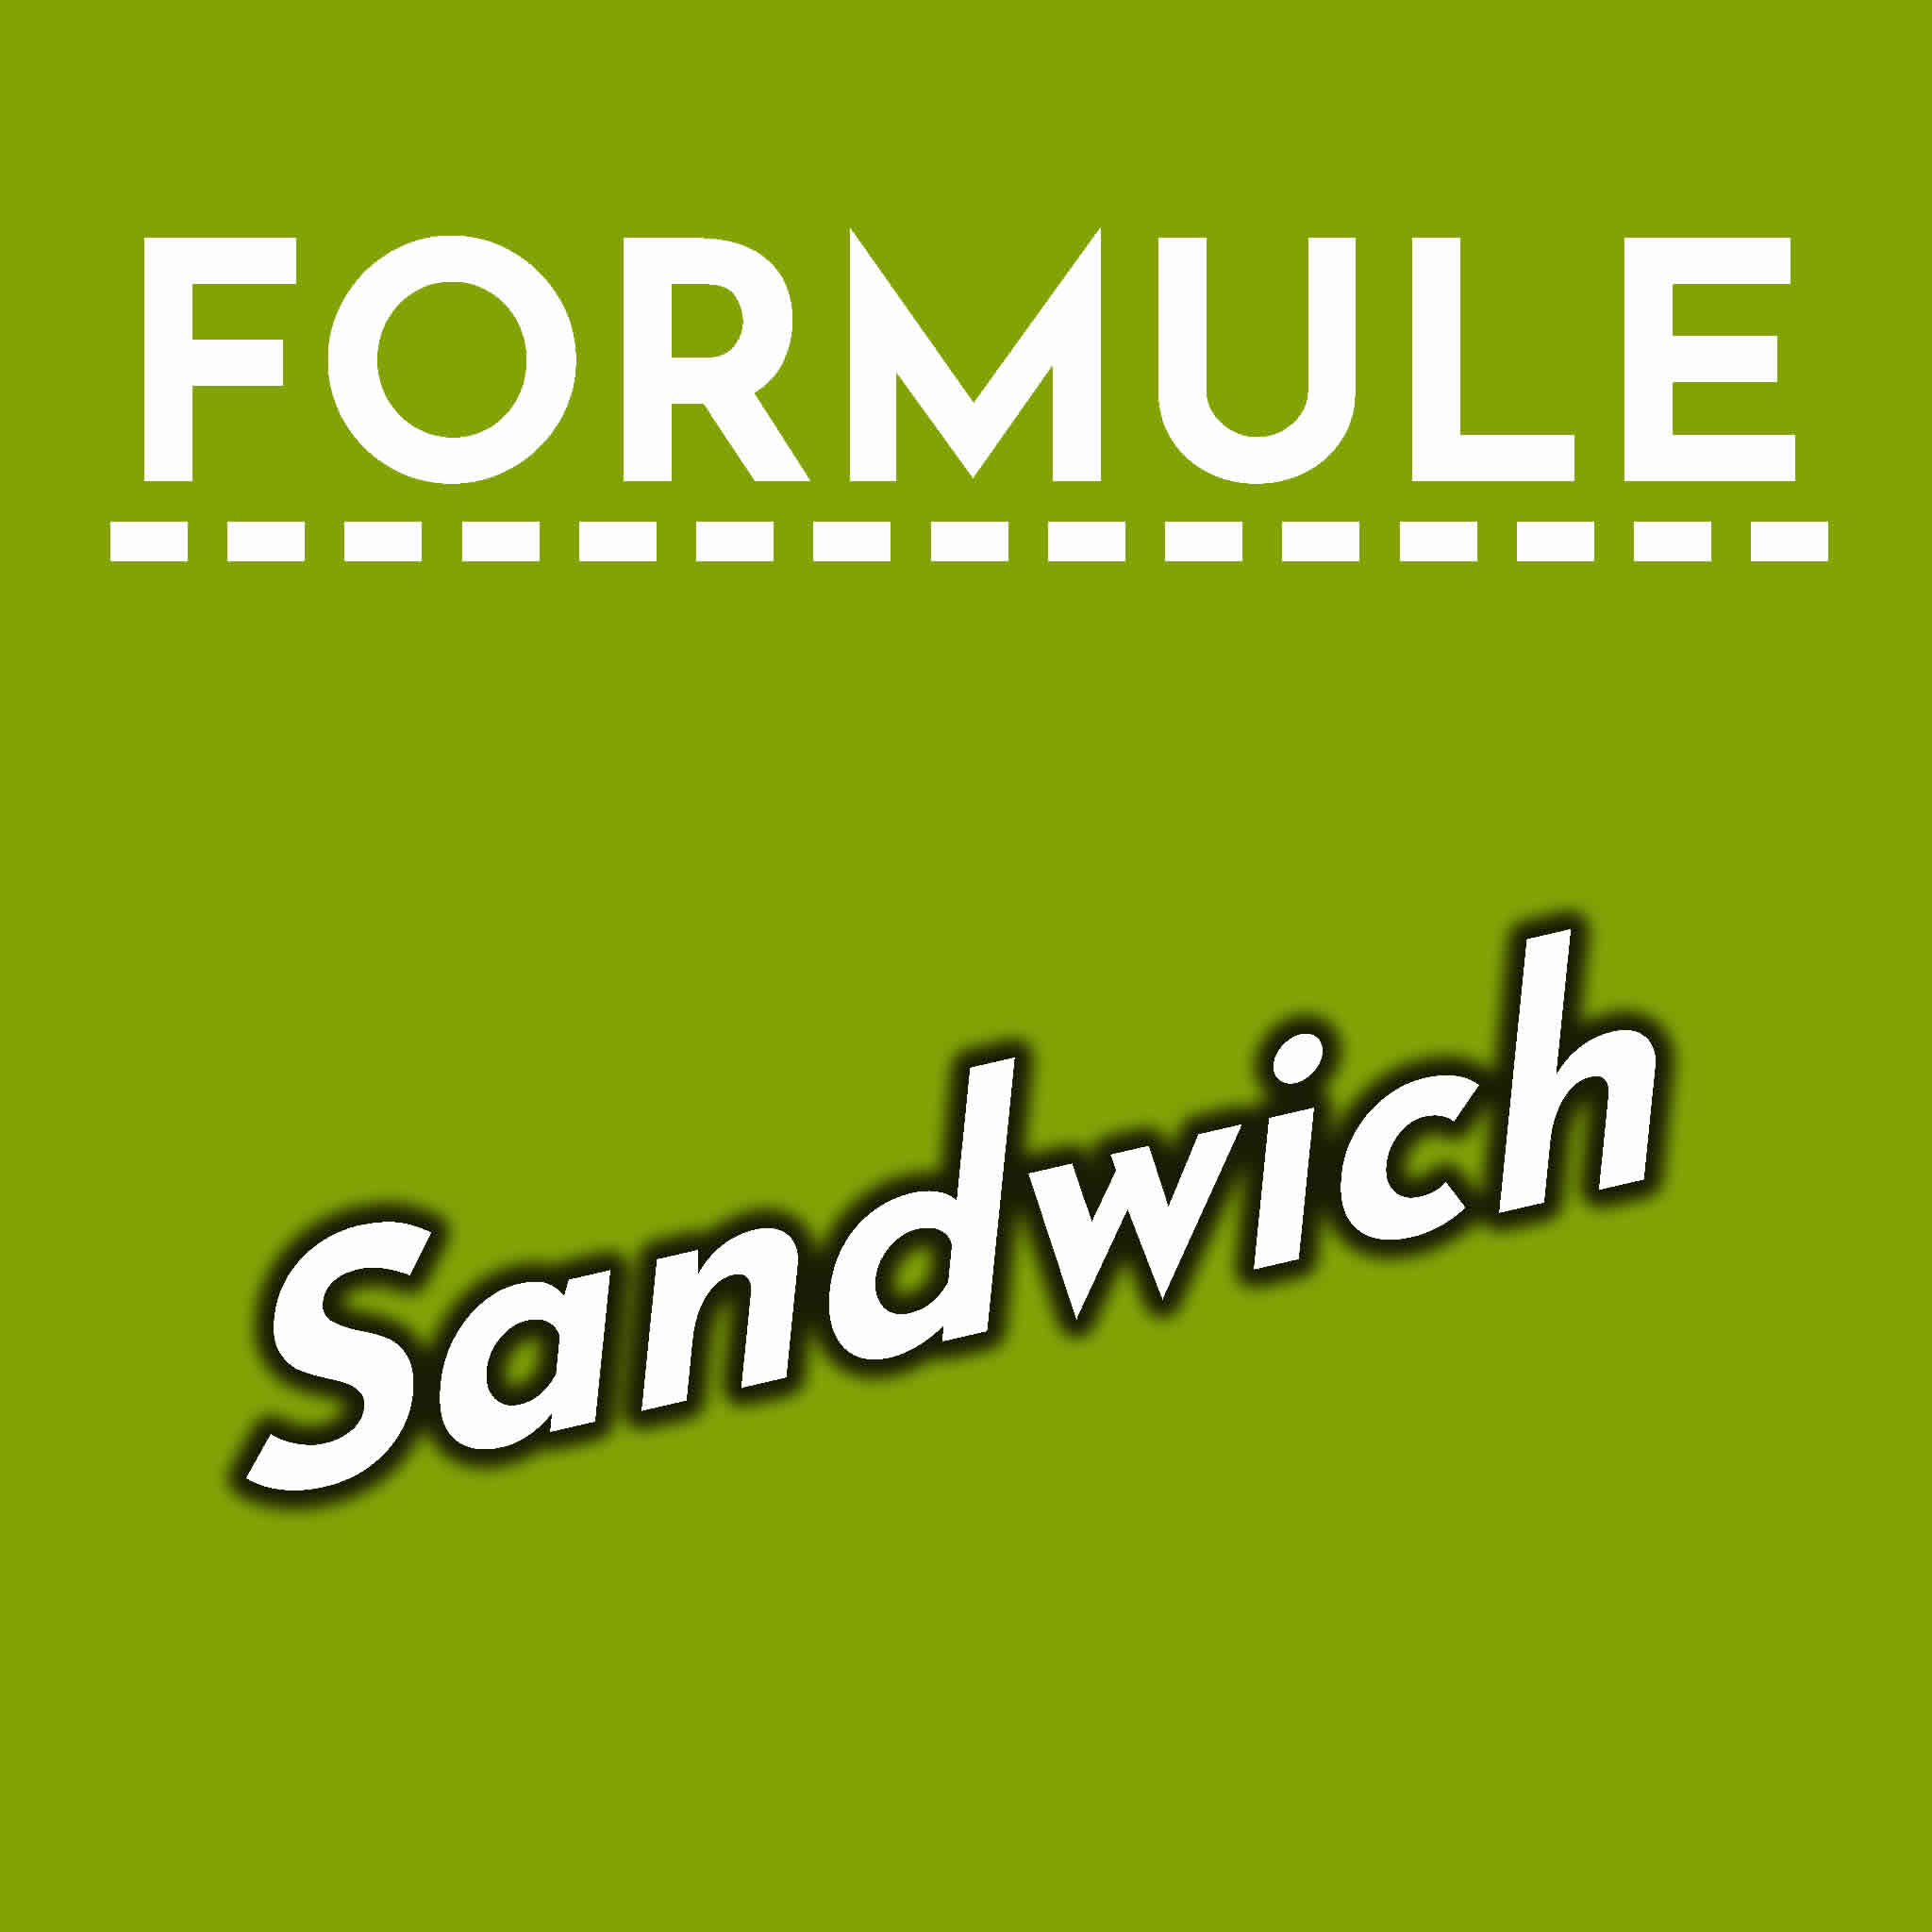 Formule Sandwich